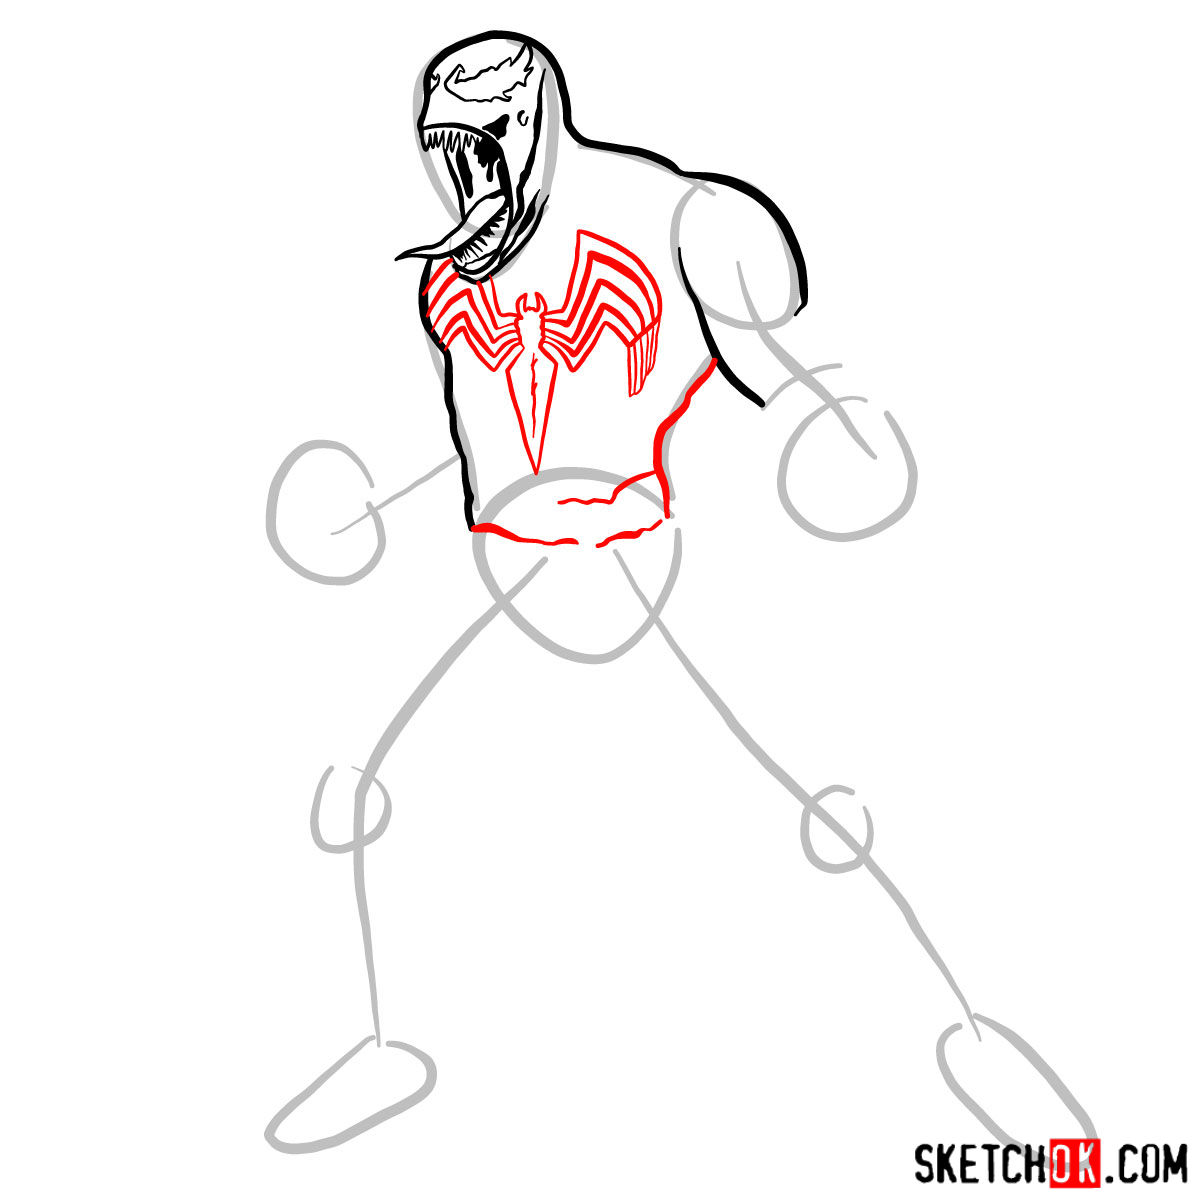 How to draw Venom symbiote step by step - step 06